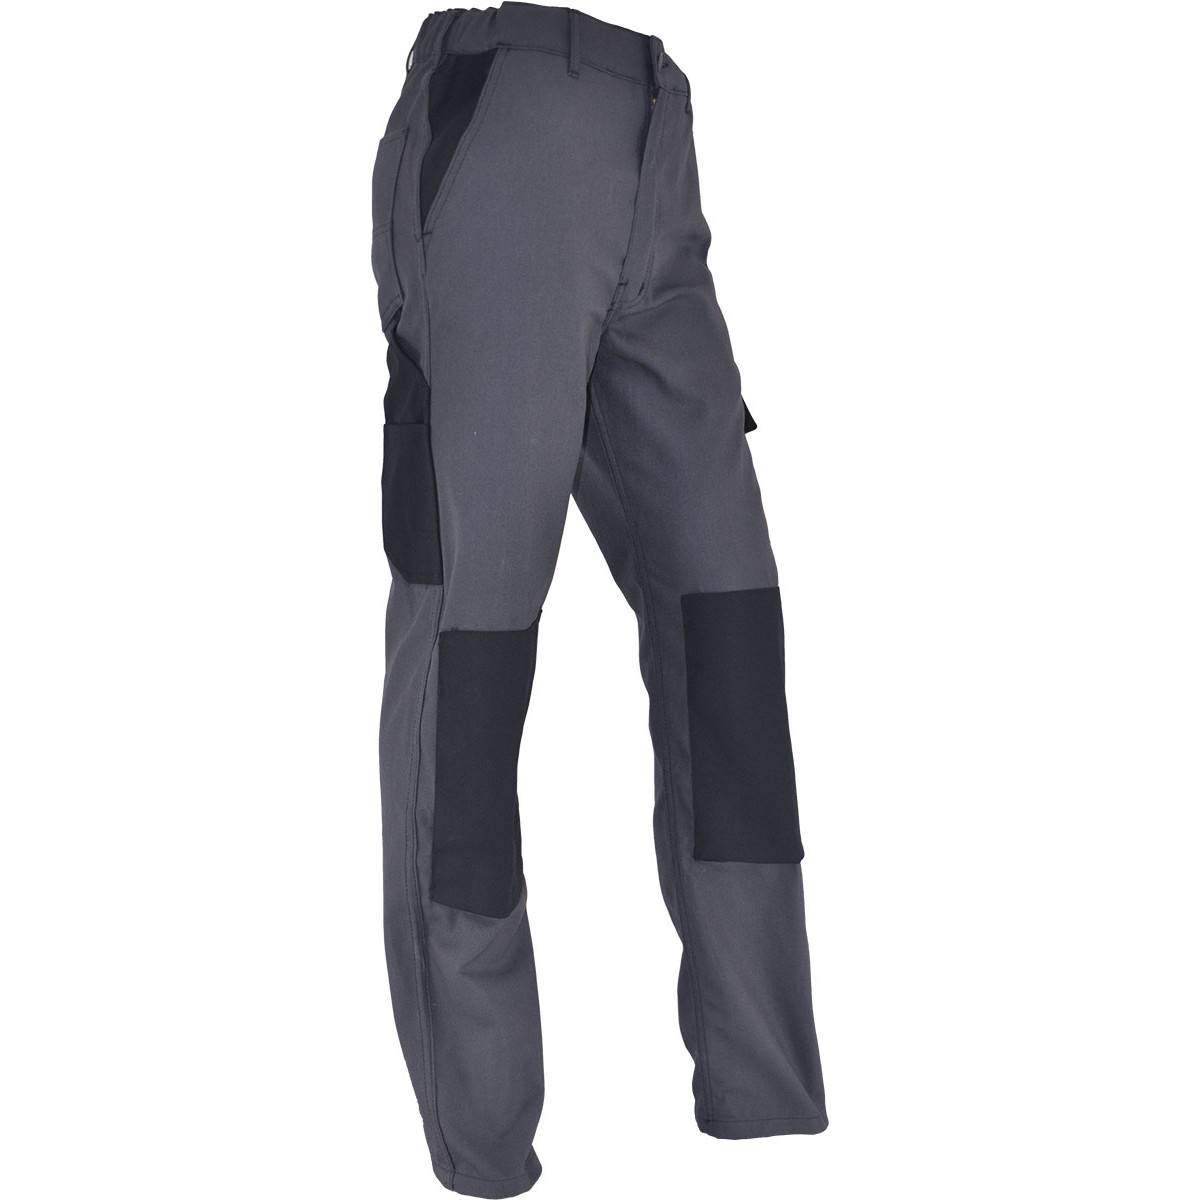 Pantalon de travail confort taille 40, gris Anthracite, poches multiples, genouillères chantiers incluses